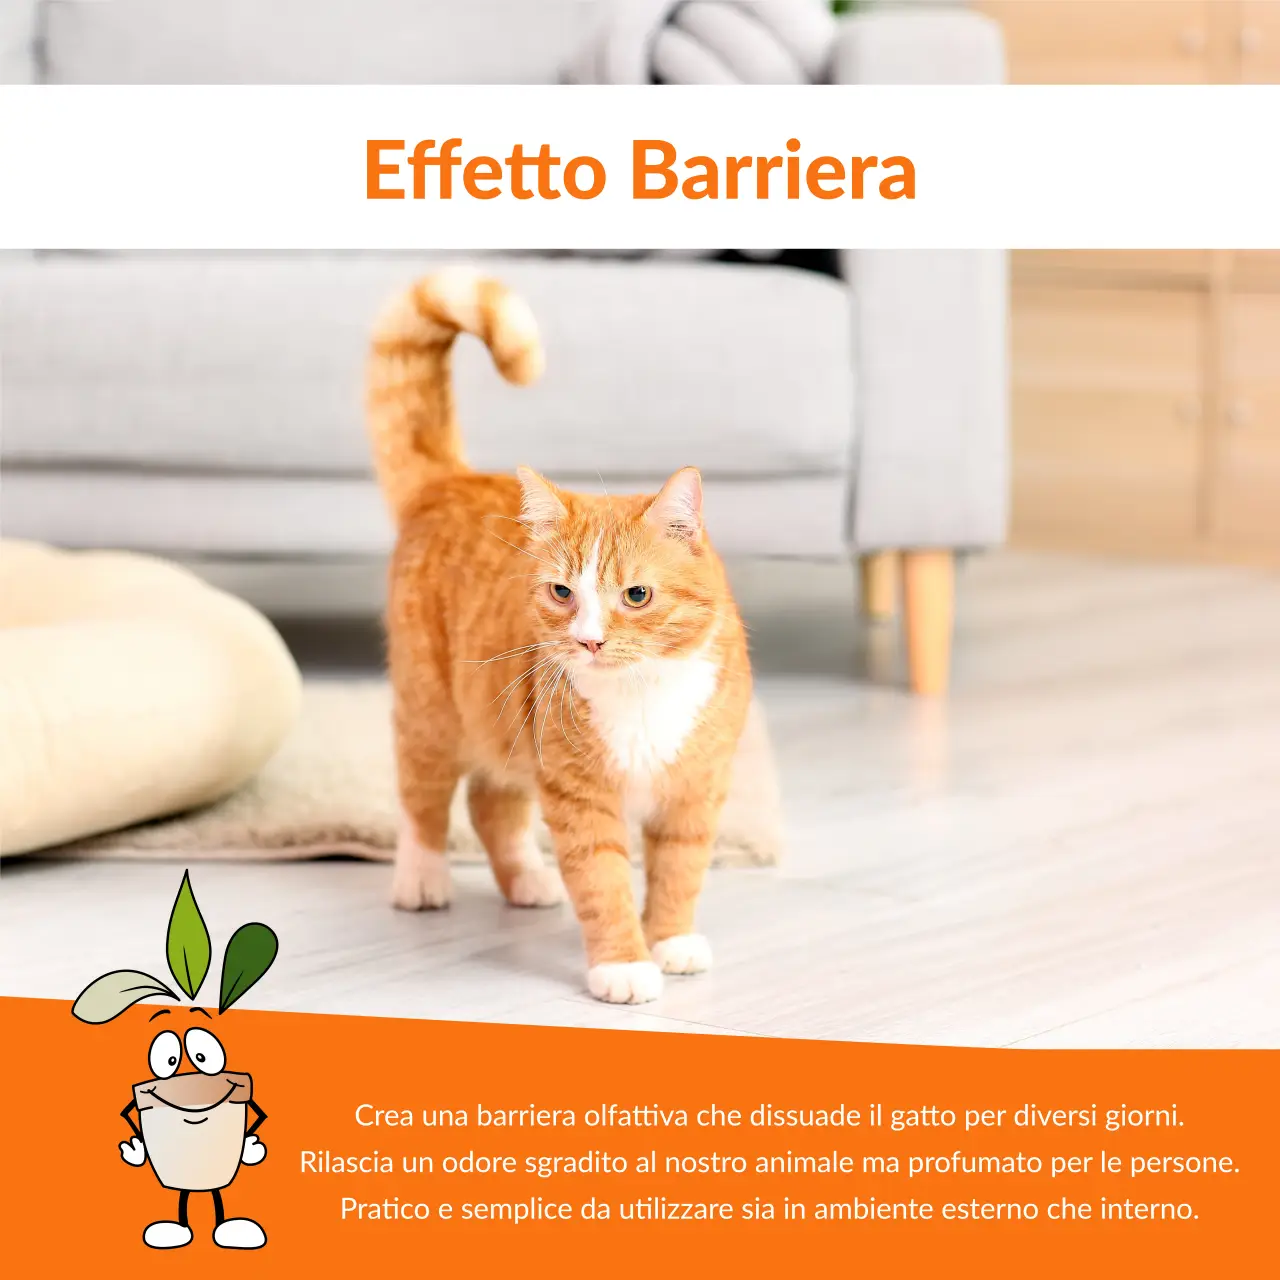 Disabituanti repellenti naturali per gatti da esterno